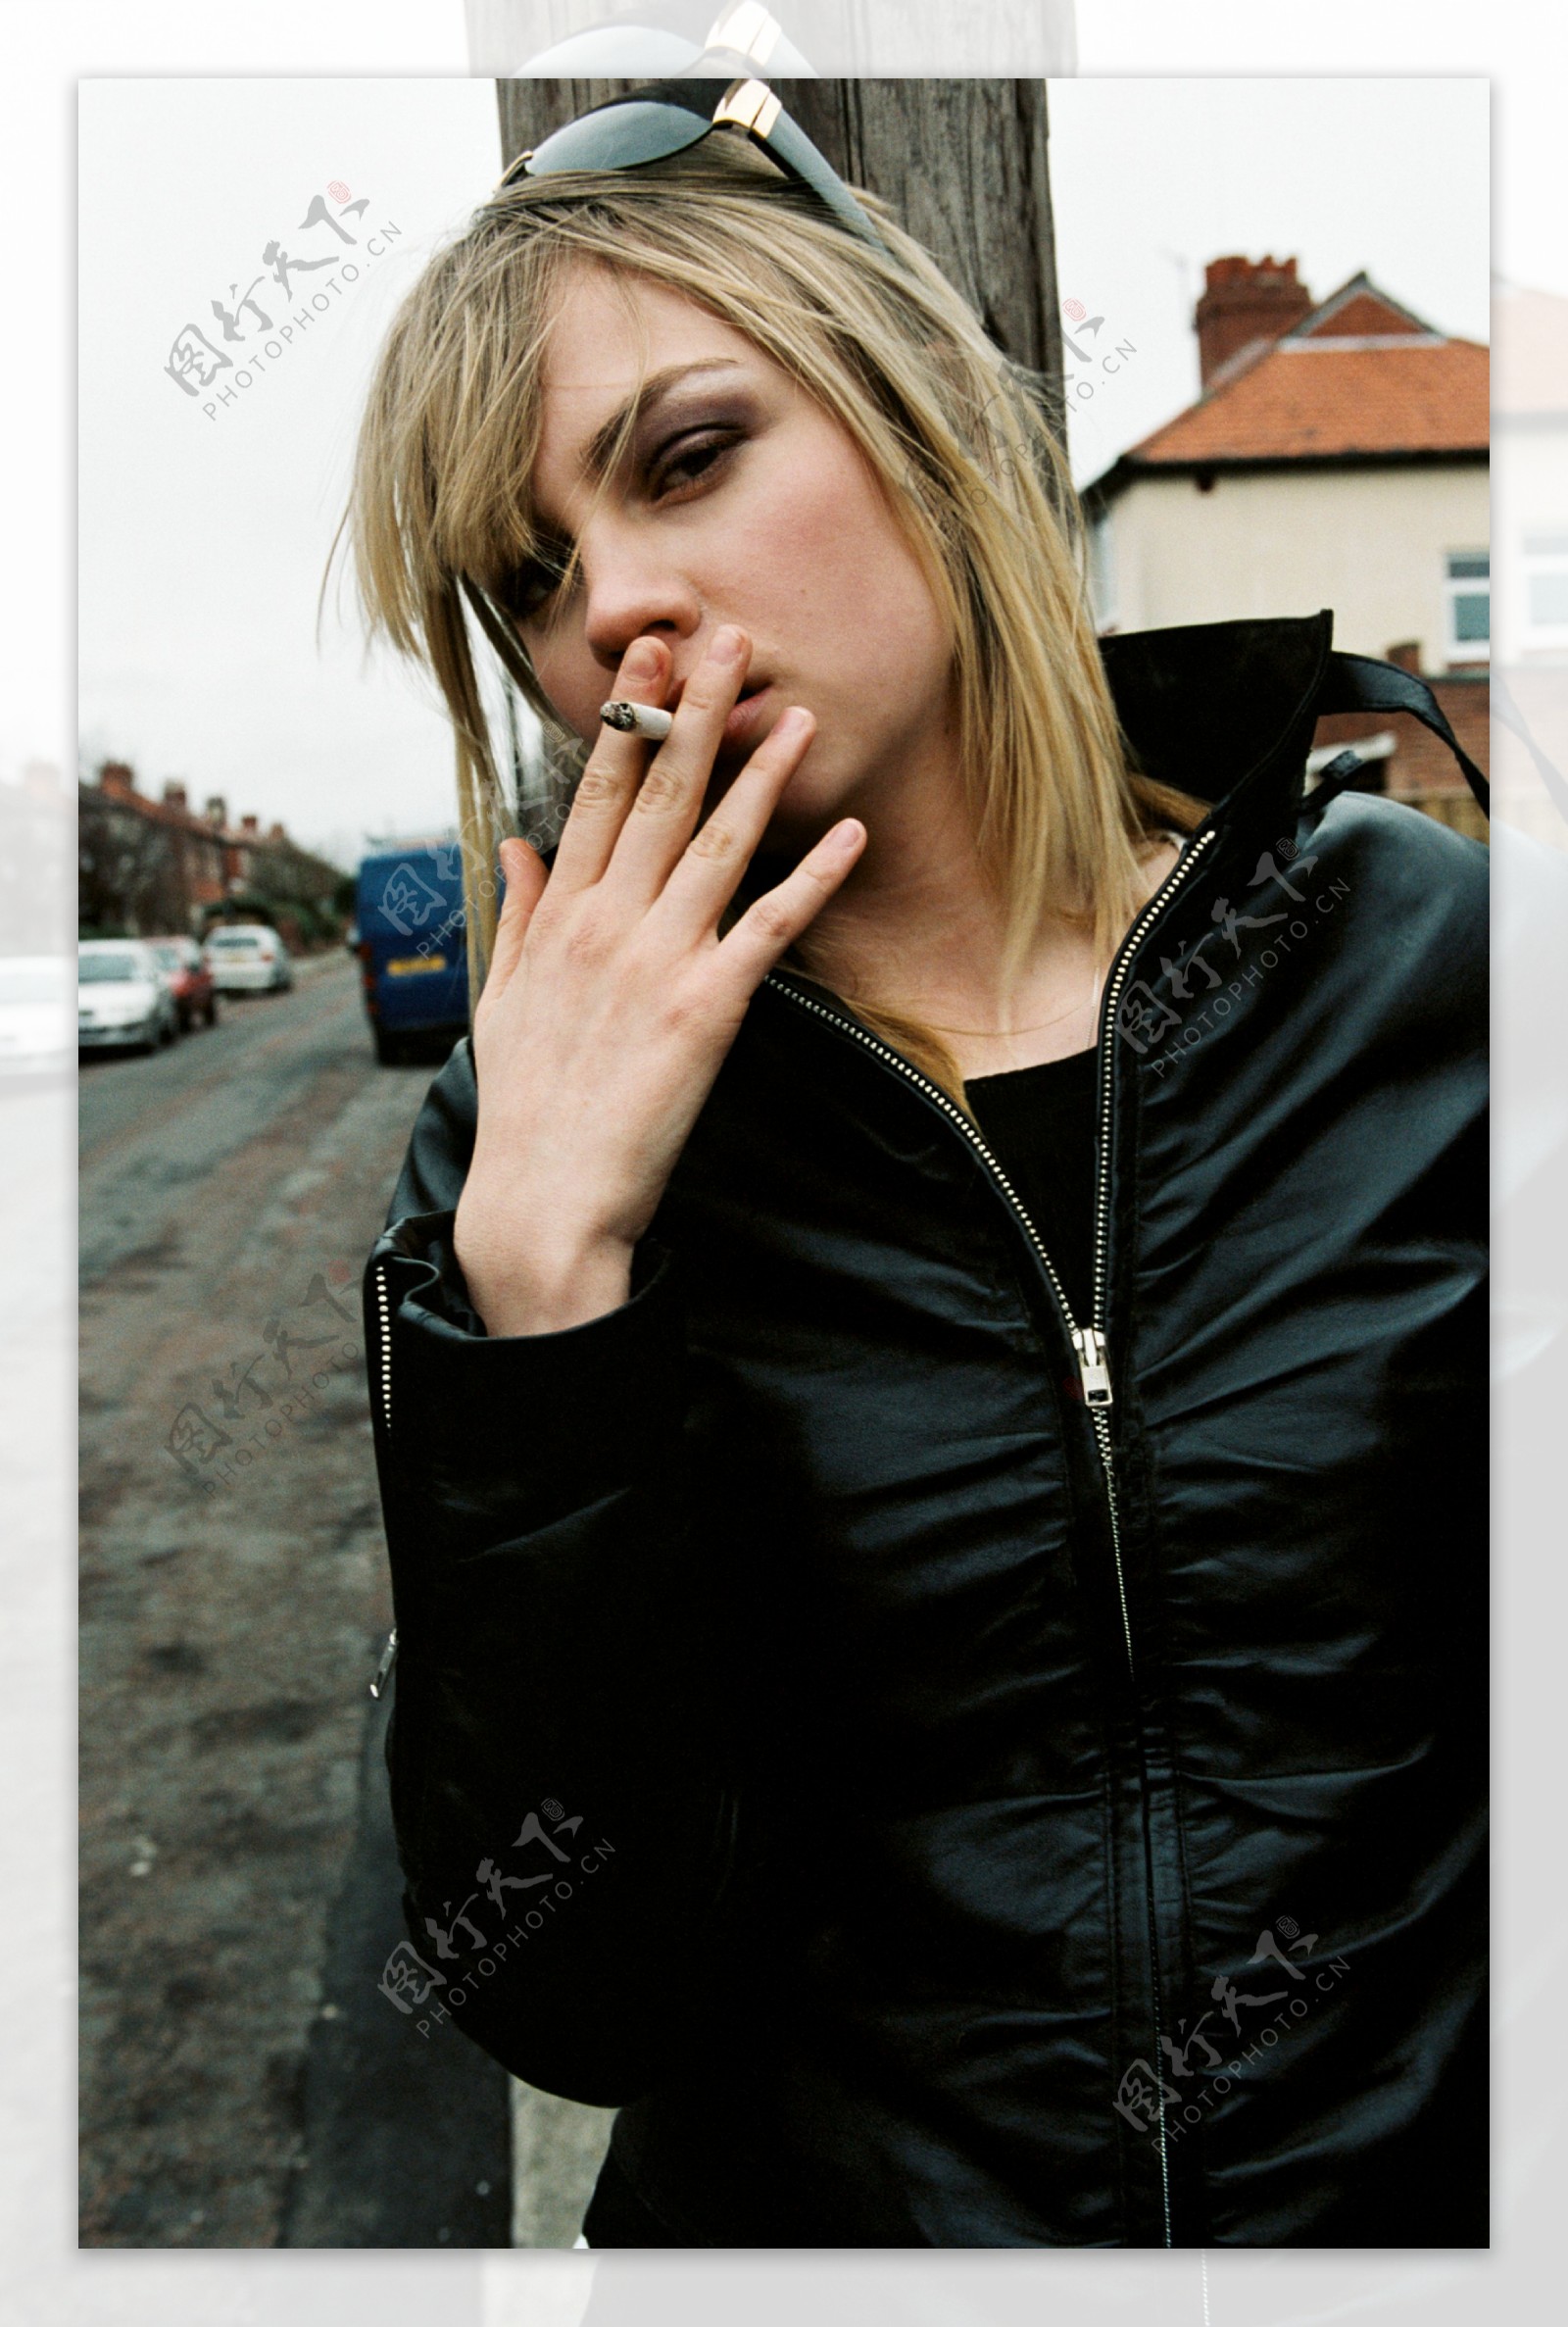 女孩抽烟 库存照片. 图片 包括有 女孩, 反射性, 相当, 年轻, 顶层, 蓝色, 可爱, 纵向, 溢满 - 4867768